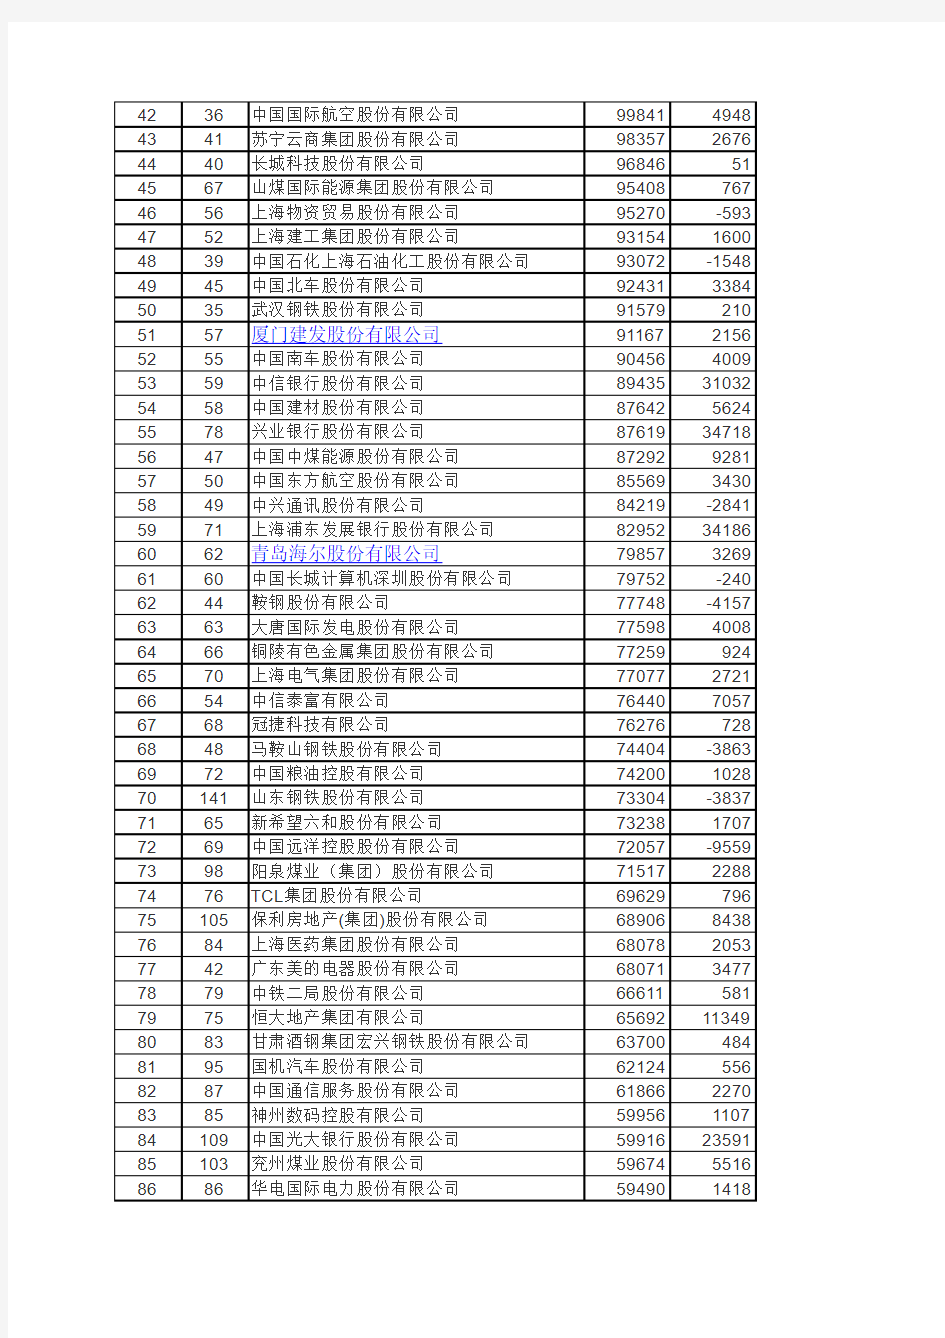 2013中国500强企业排行榜(最新)